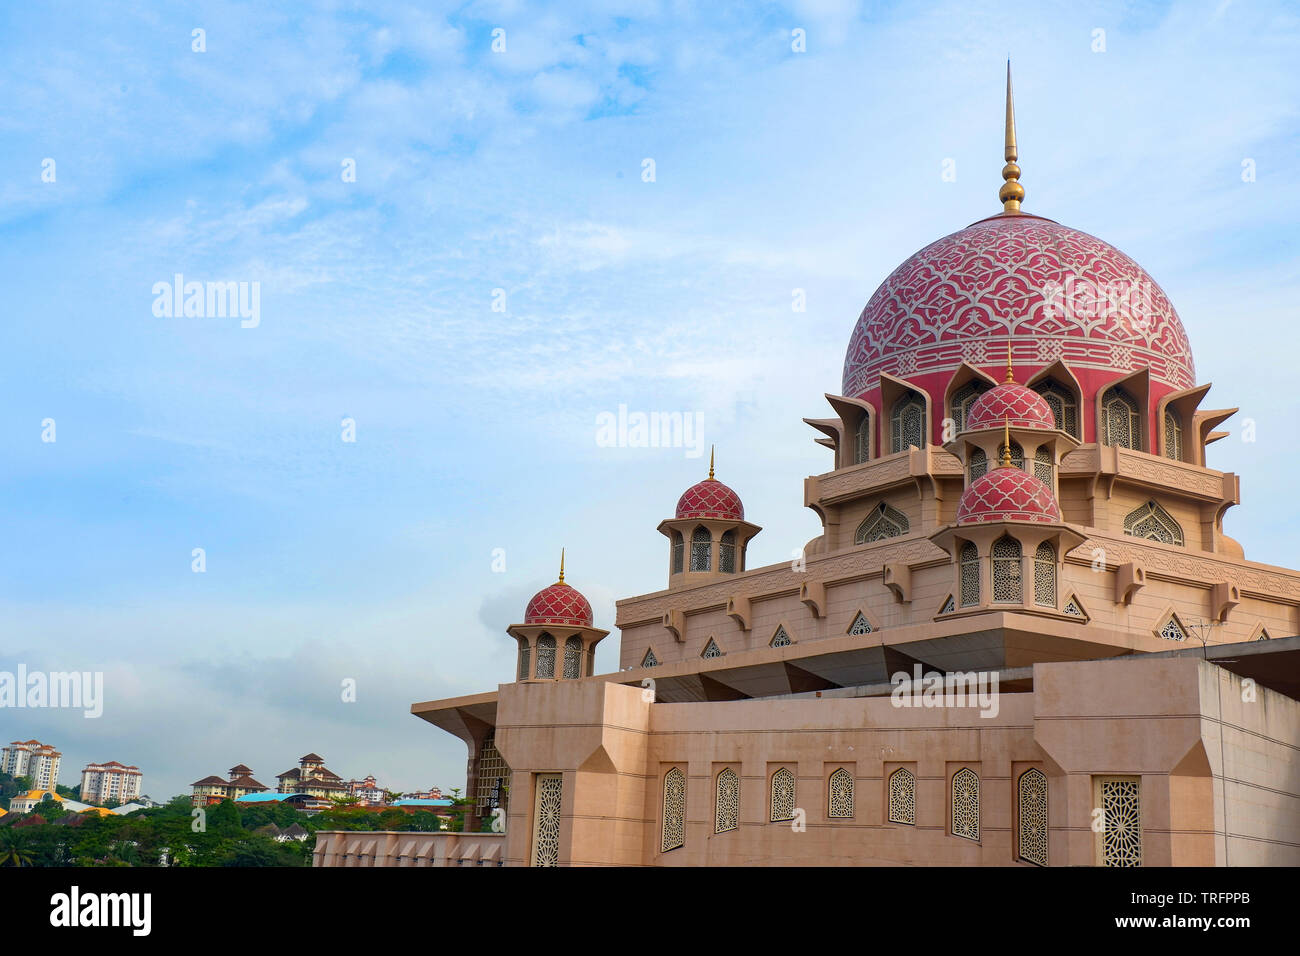 Mosquée Putra plus célèbre attraction touristique à Kuala Lumpur Malaisie / Putrajaya Masjid Putra Banque D'Images